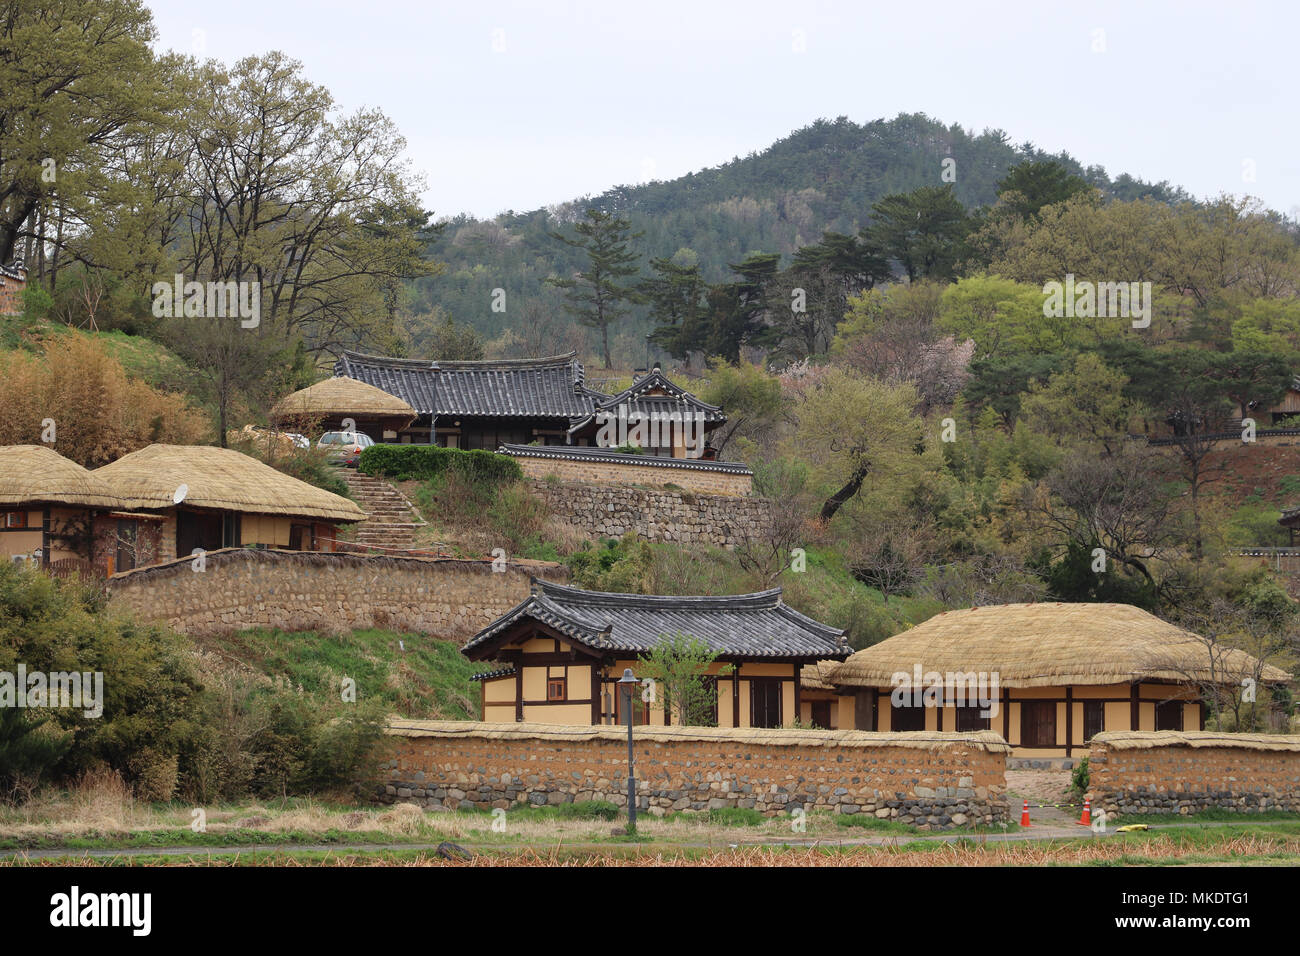 En Yangdong Village, Corea del Sur, casas del siglo XV se conservan en este sitio UNESCO.de techos de paja y techo de tejas, casas construidas sobre colinas, árboles, montañas. Foto de stock